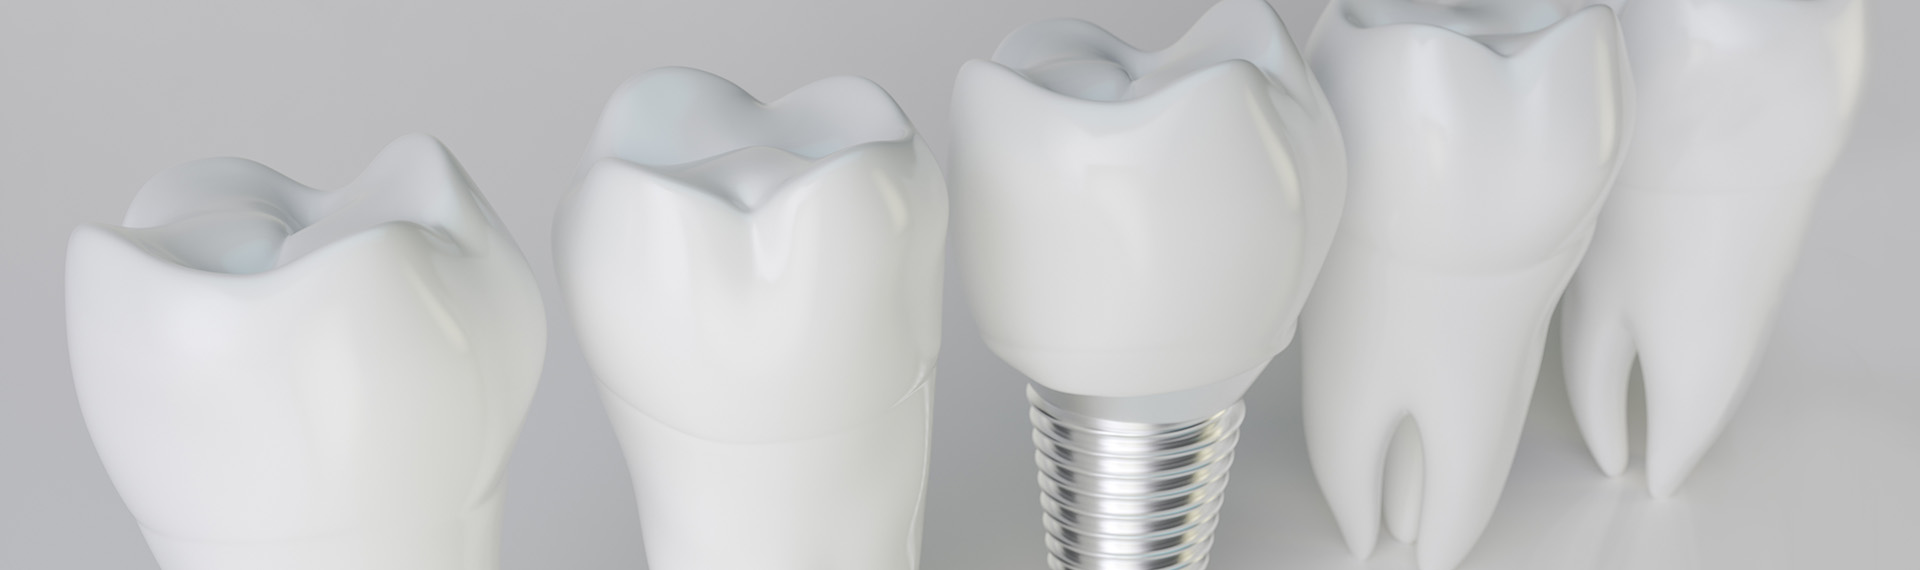 Was kosten Zahnimplantate?